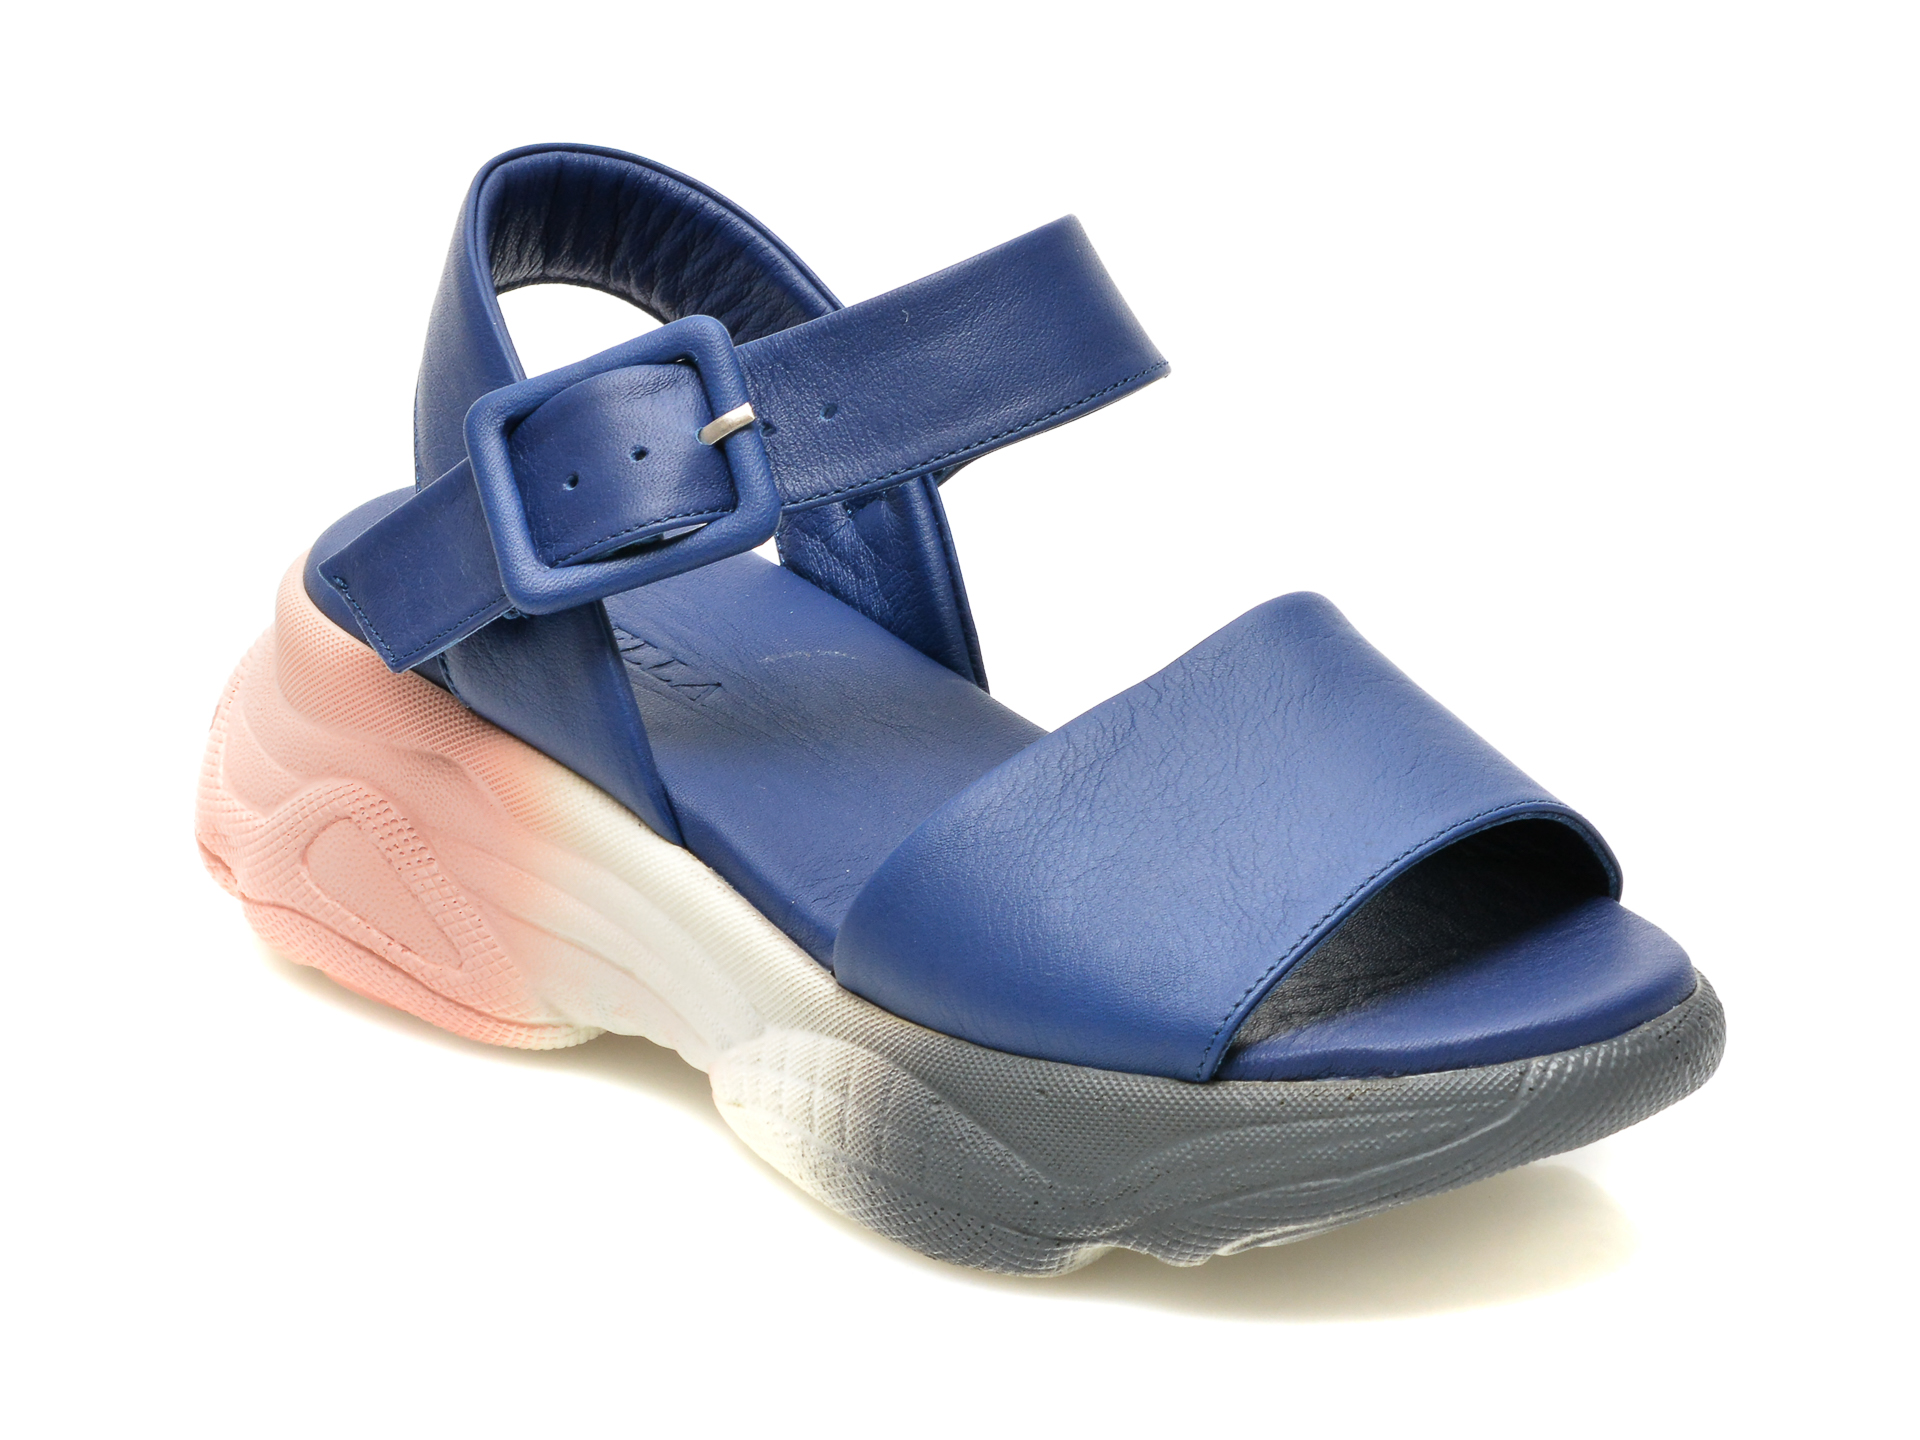 Sandale LOLILELLA bleumarin, 1581078, din piele naturala /femei/sandale